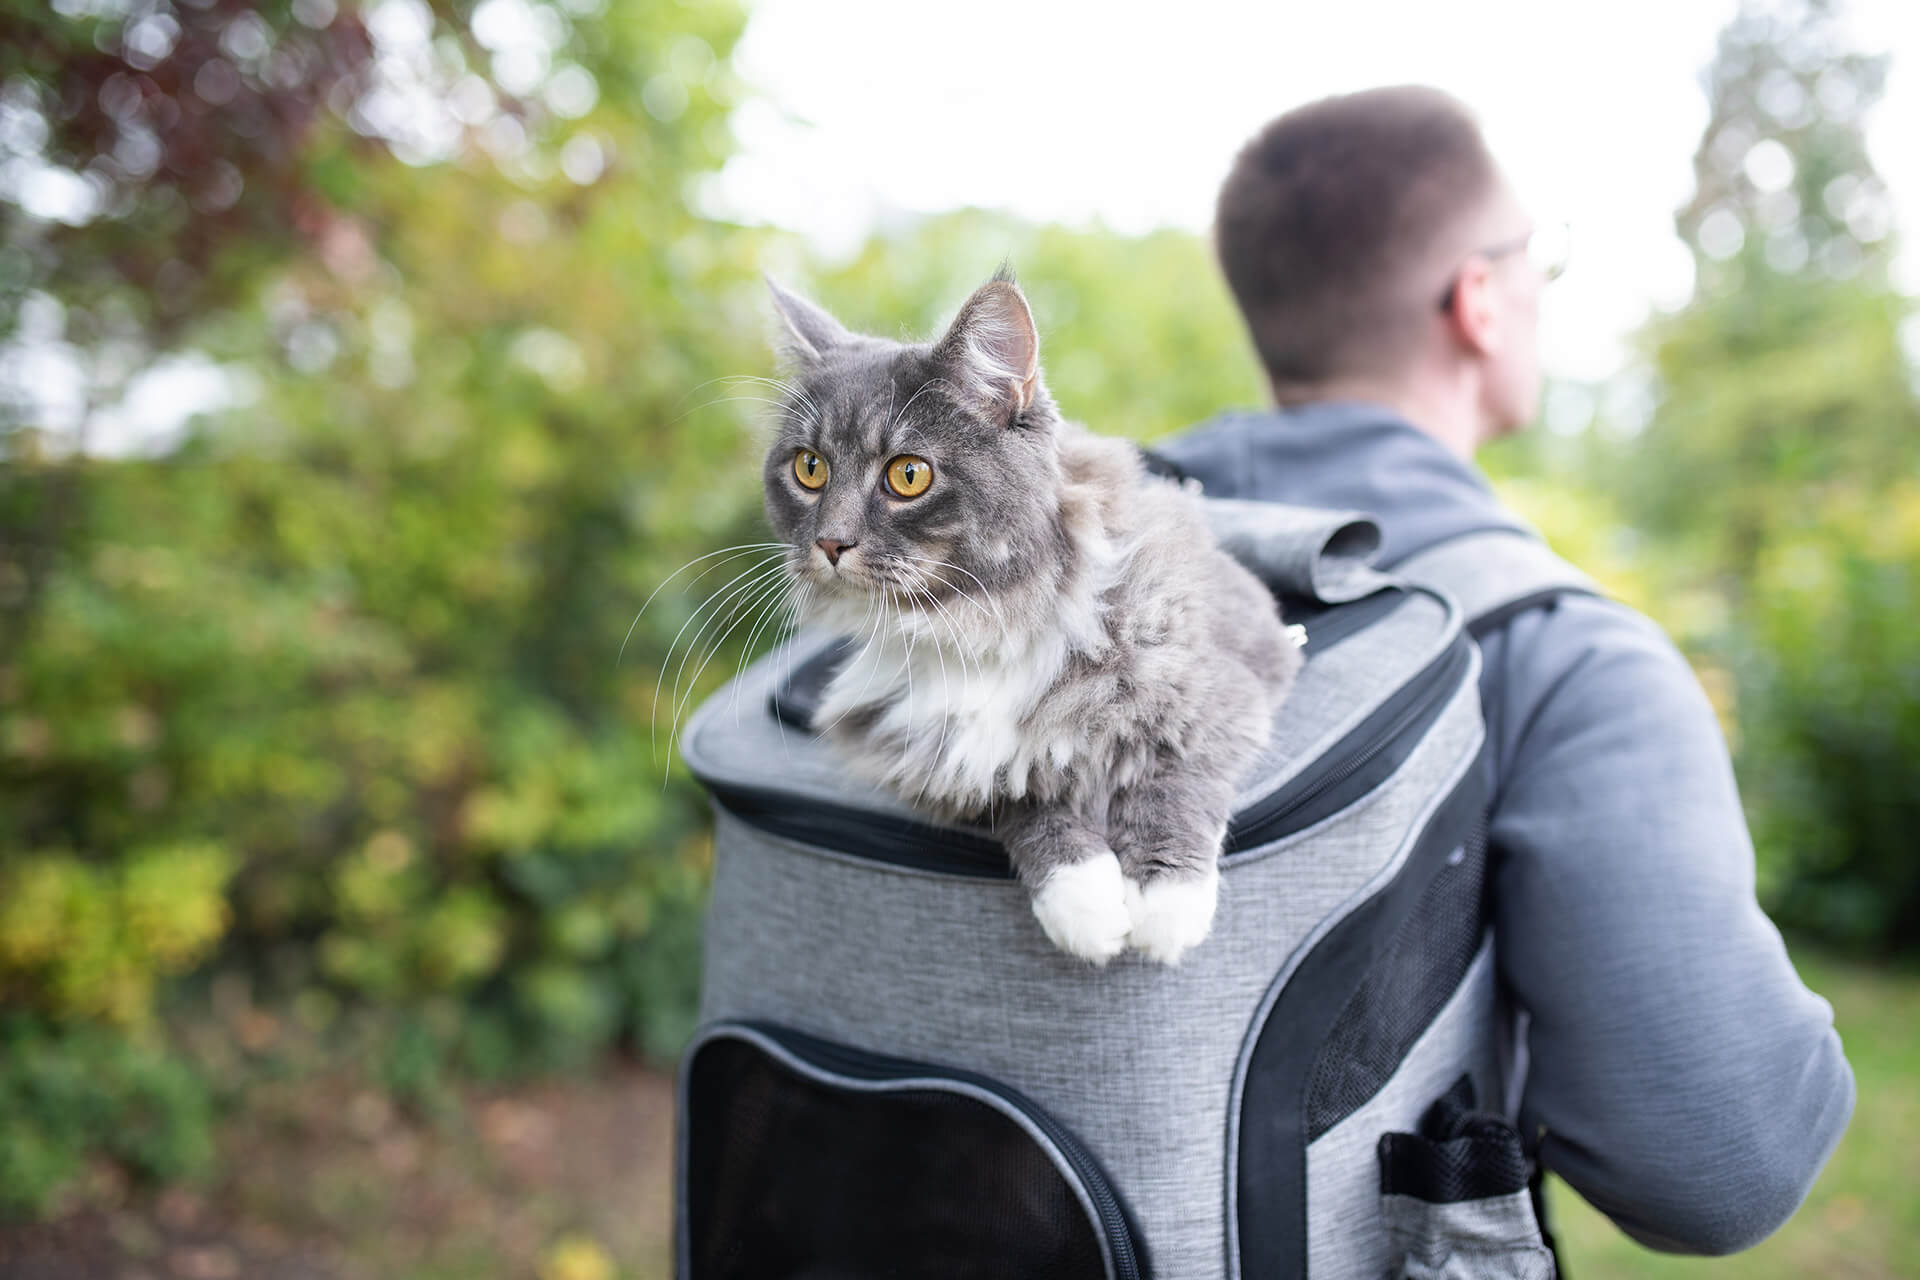 Comment faire de la randonnée avec un chat ? Tous nos conseils pour une randonnée en sécurité